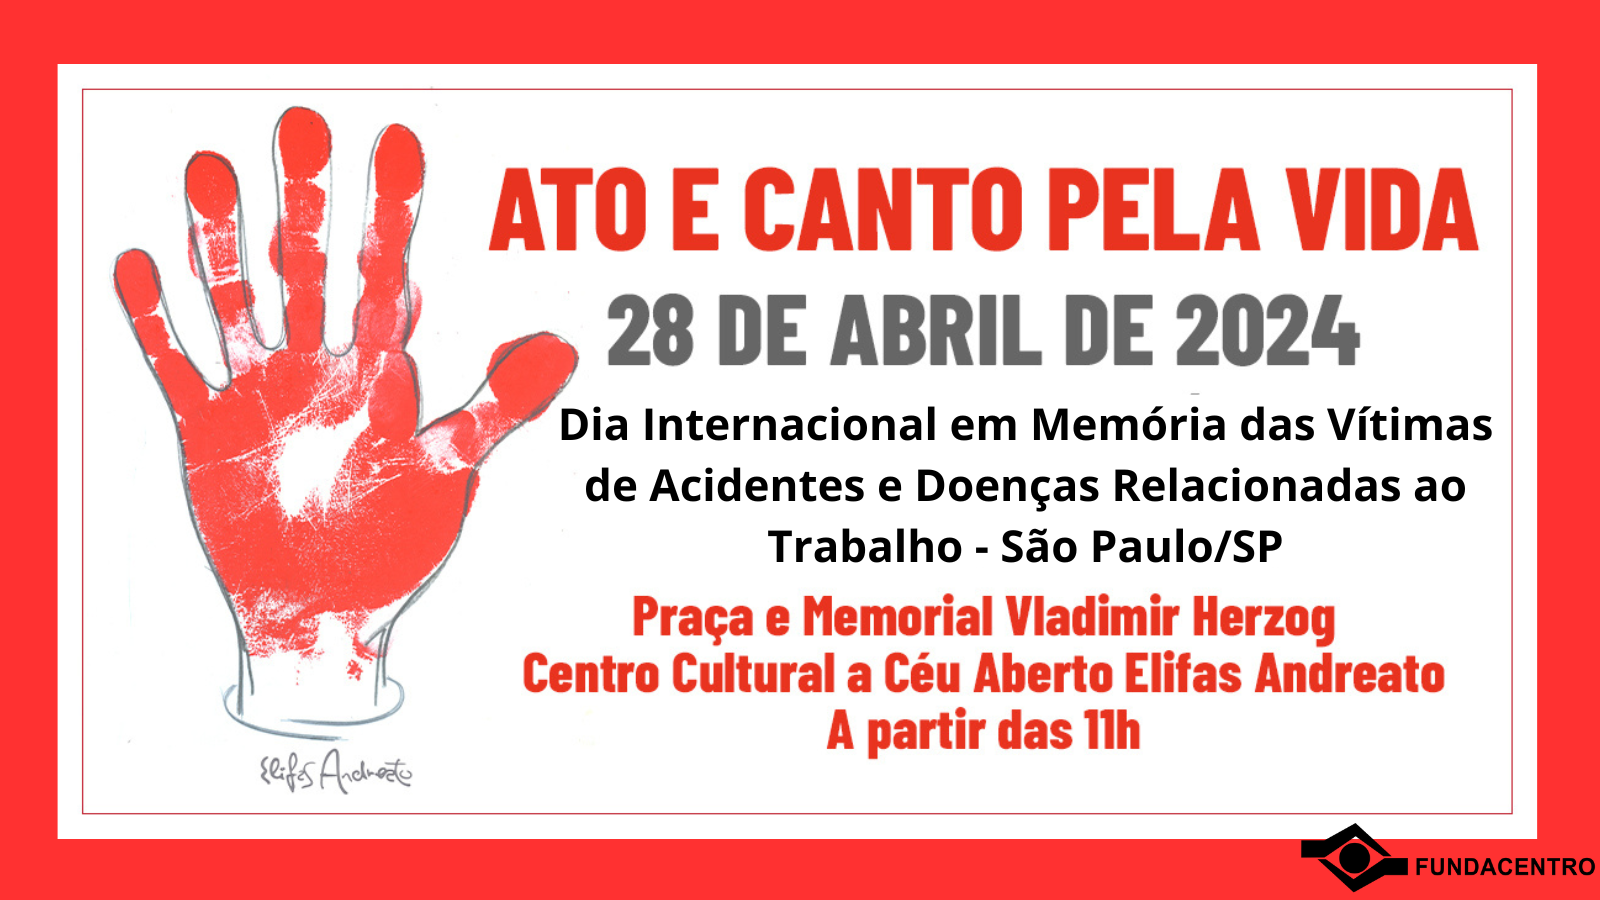 Atividade, organizada por mais de 40 instituições, ocorre em São Paulo para chamar atenção da sociedade ao Dia Internacional em Memória das Vítimas de Acidentes e Doenças Relacionadas ao Trabalho